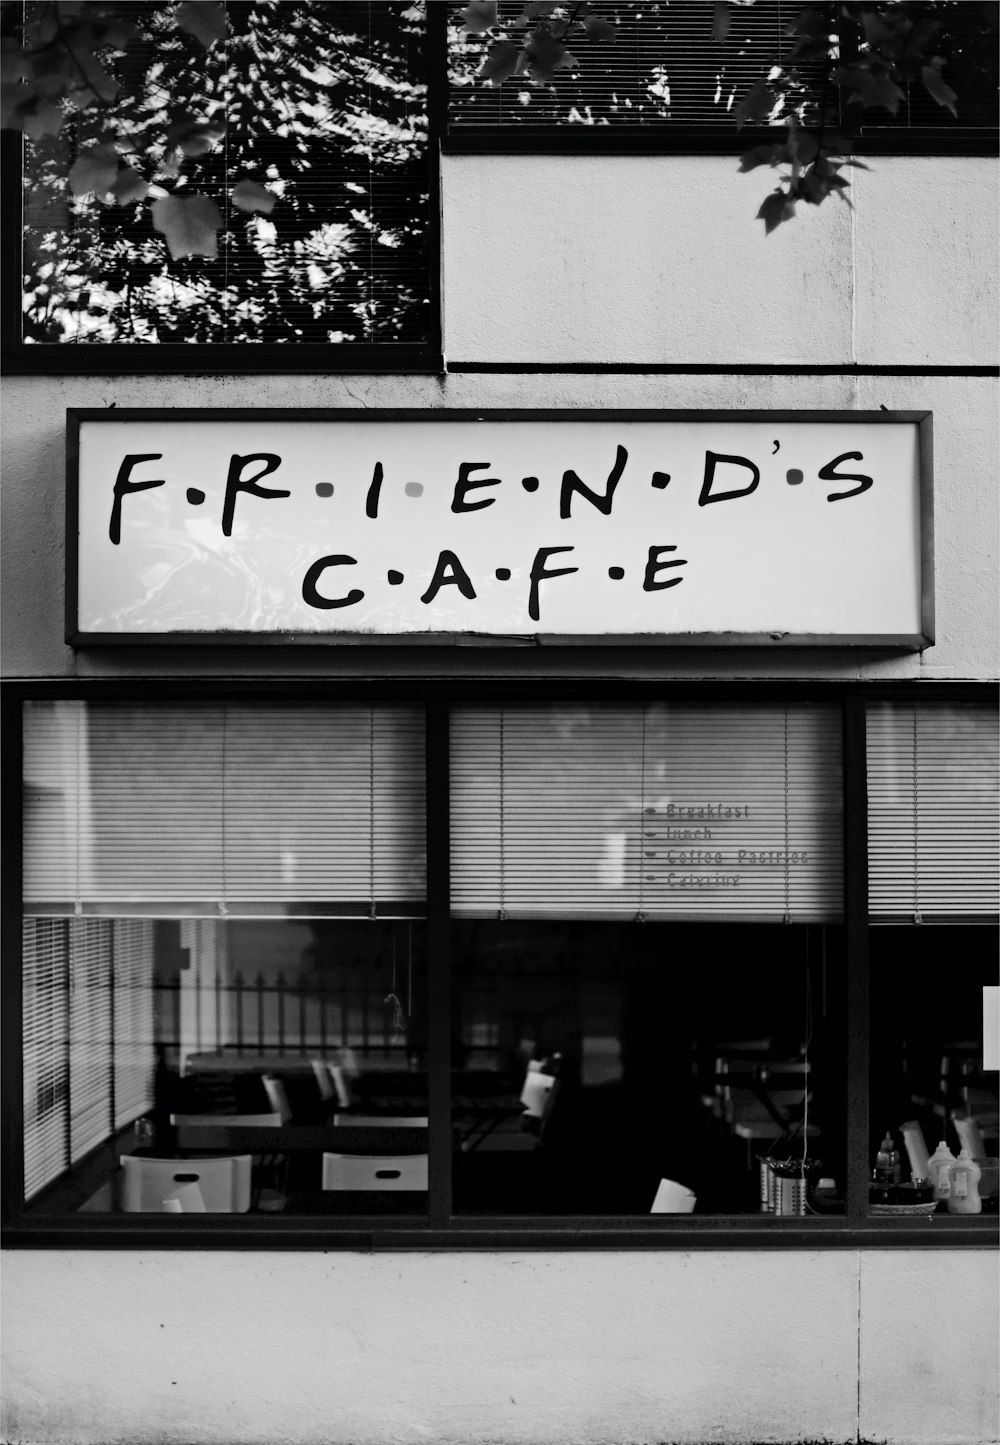 photo en niveaux de gris du magasin Friends Cafe